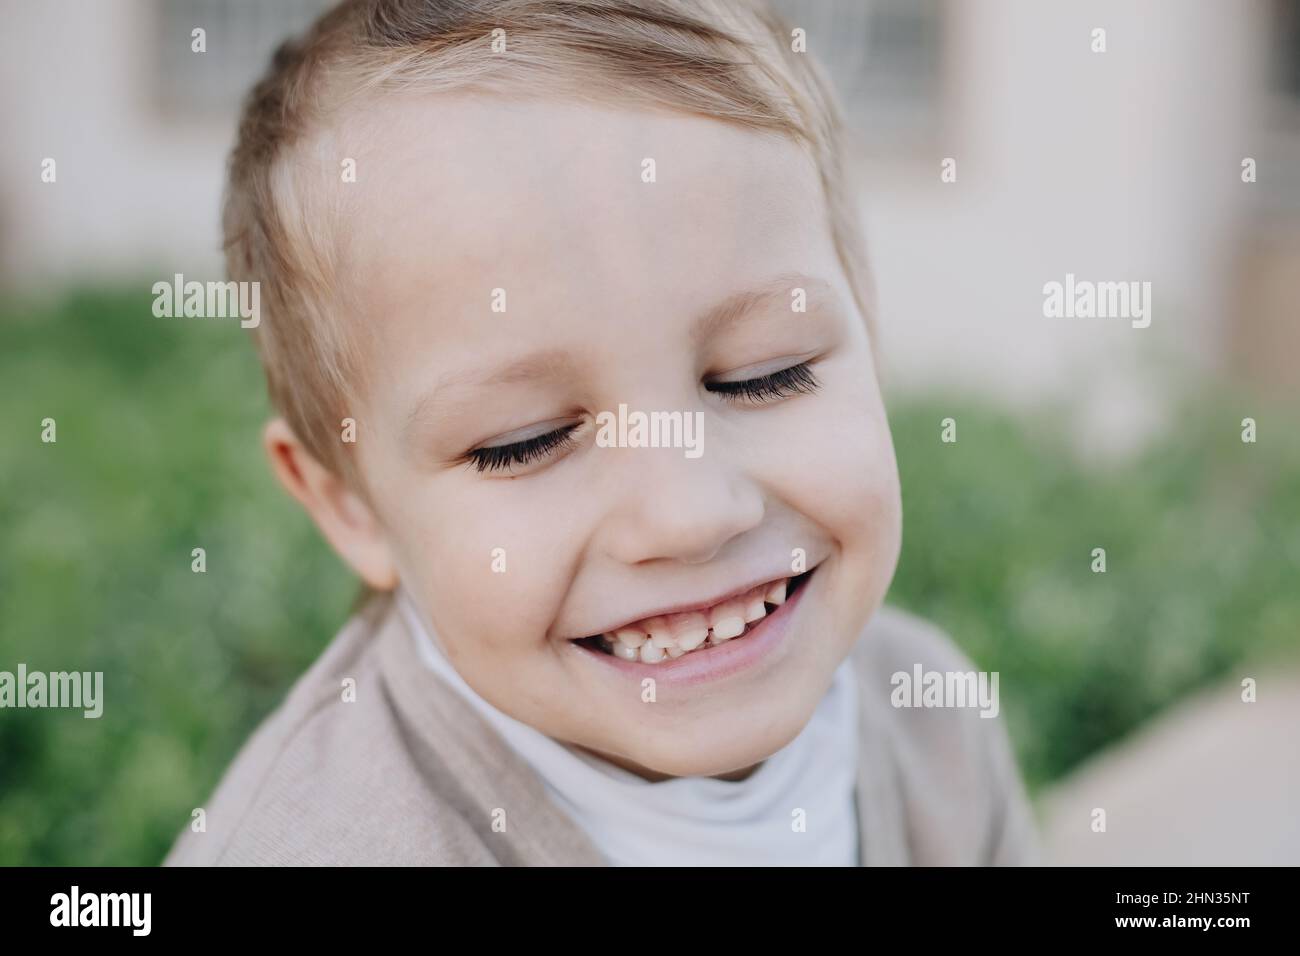 Faccia di bambino piccolo felice con gli occhi chiusi e sorridere con i denti del bambino Foto Stock